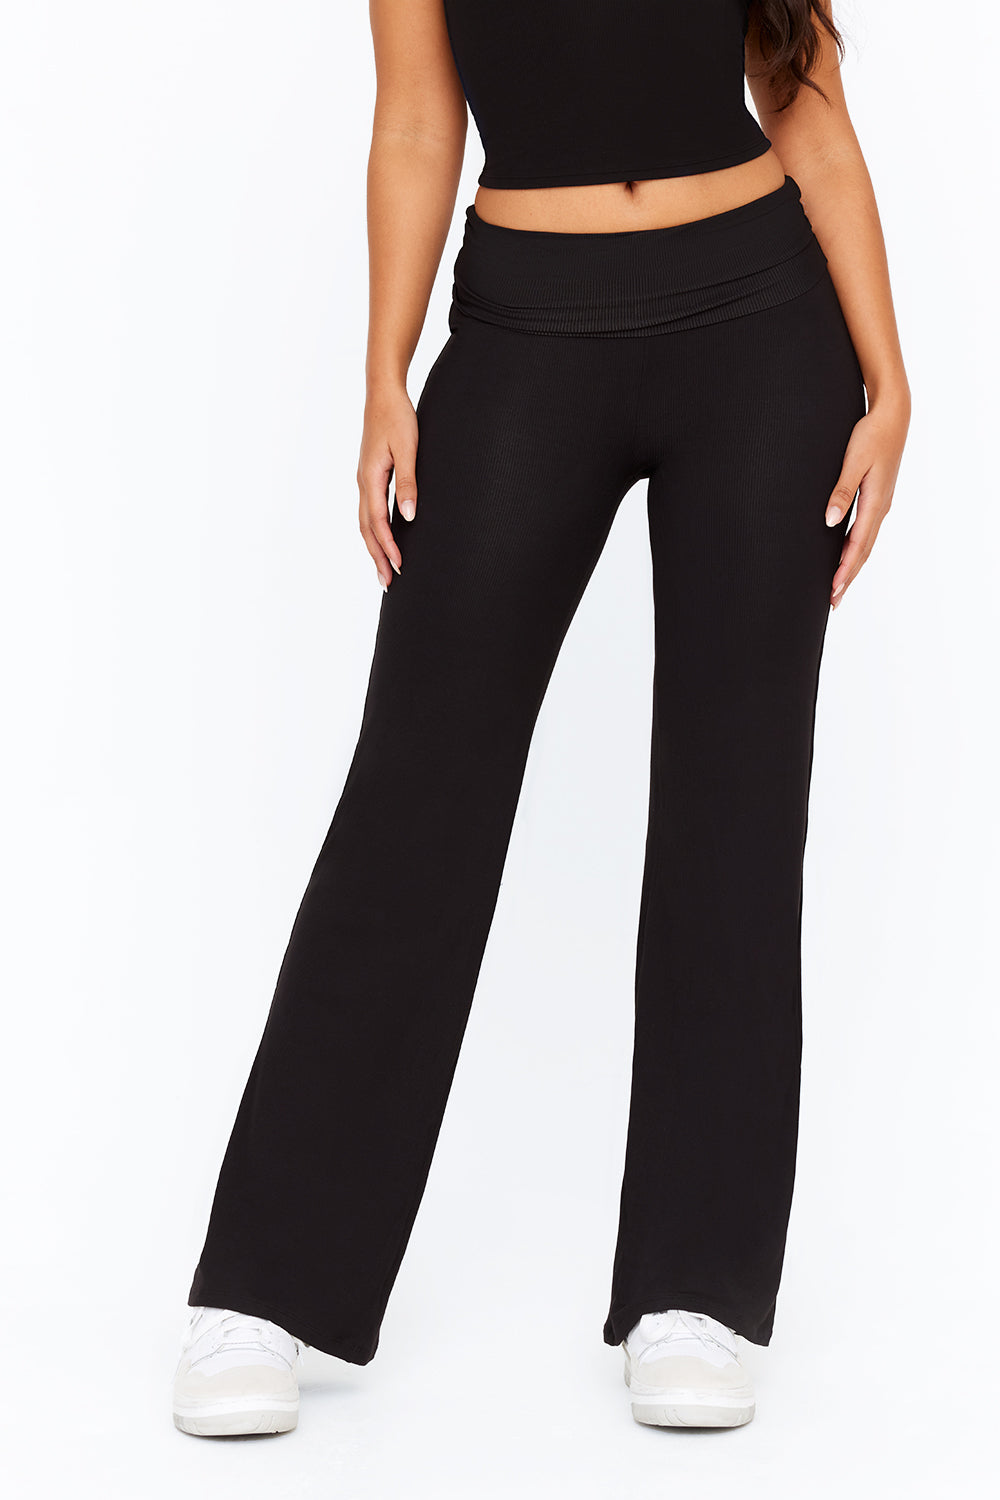 Cotton Side Slit Pant - Black – Le' Diva Boutique Store